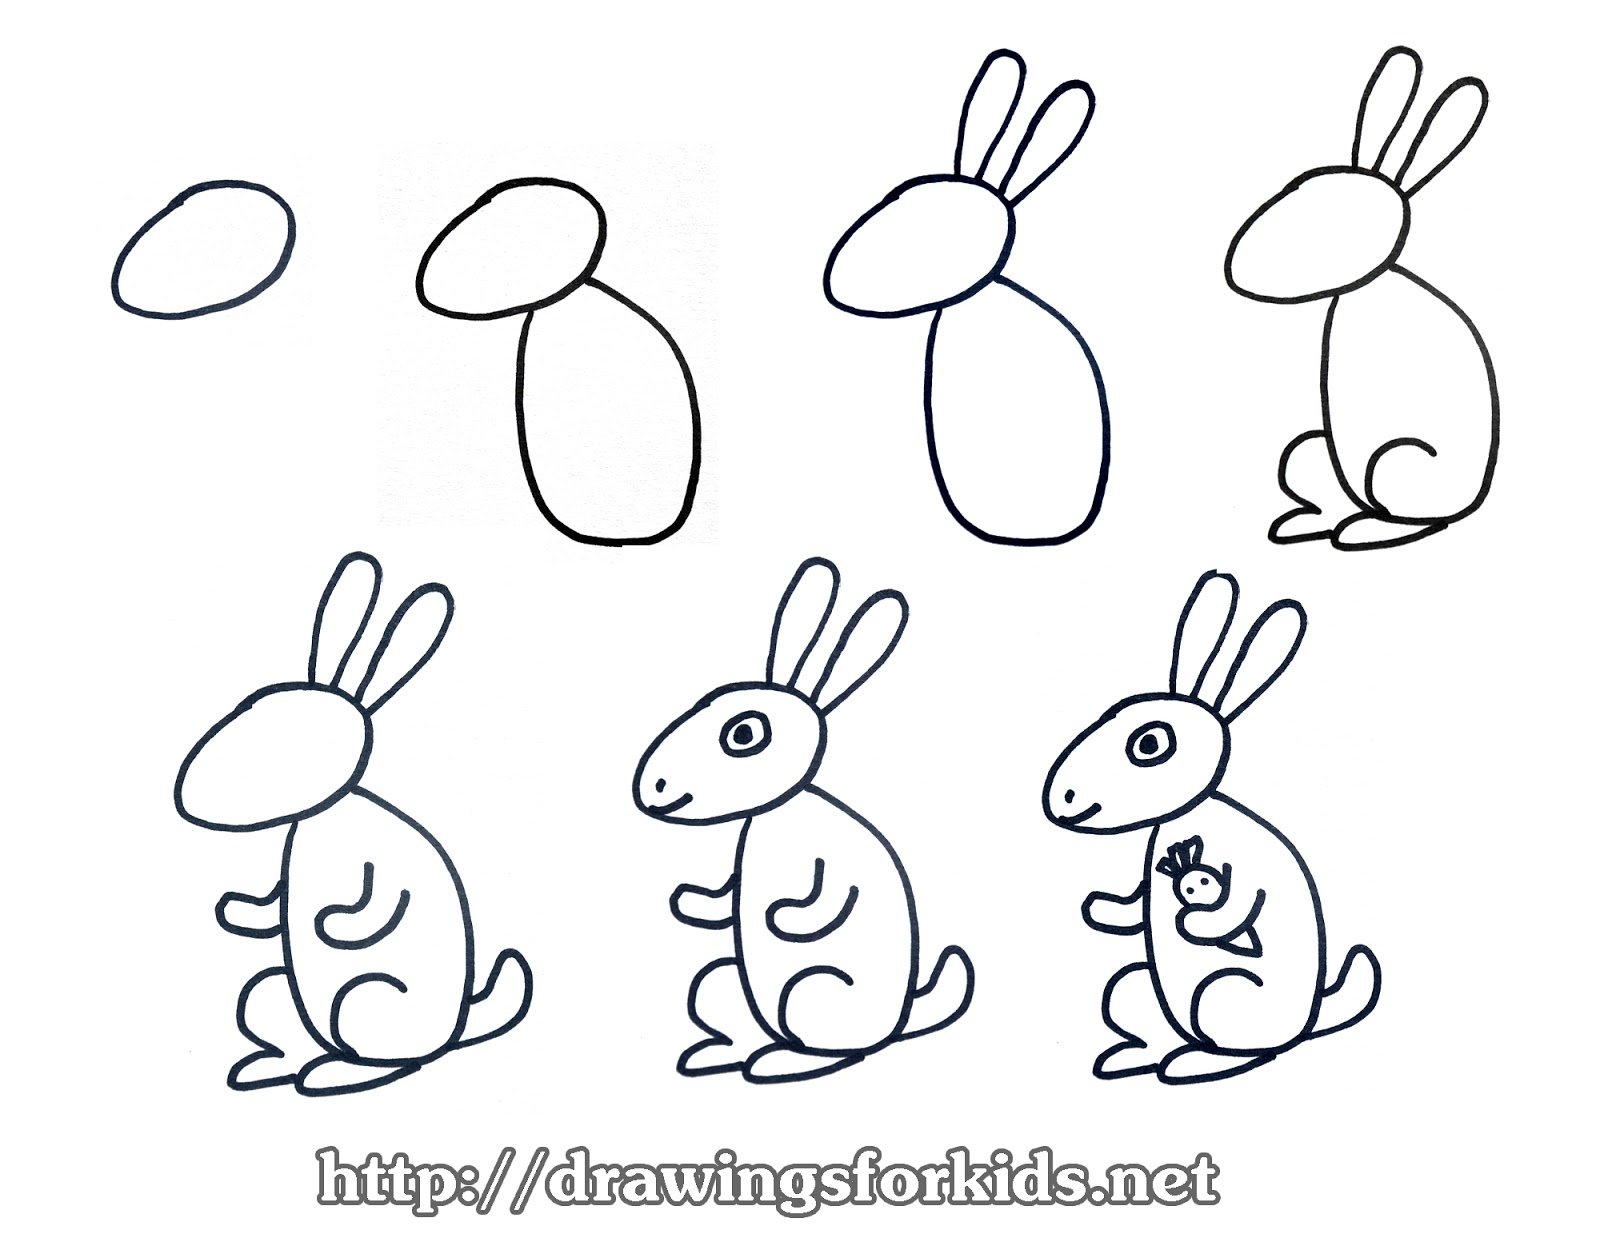 Рисуем зайца поэтапно для детей 4-5